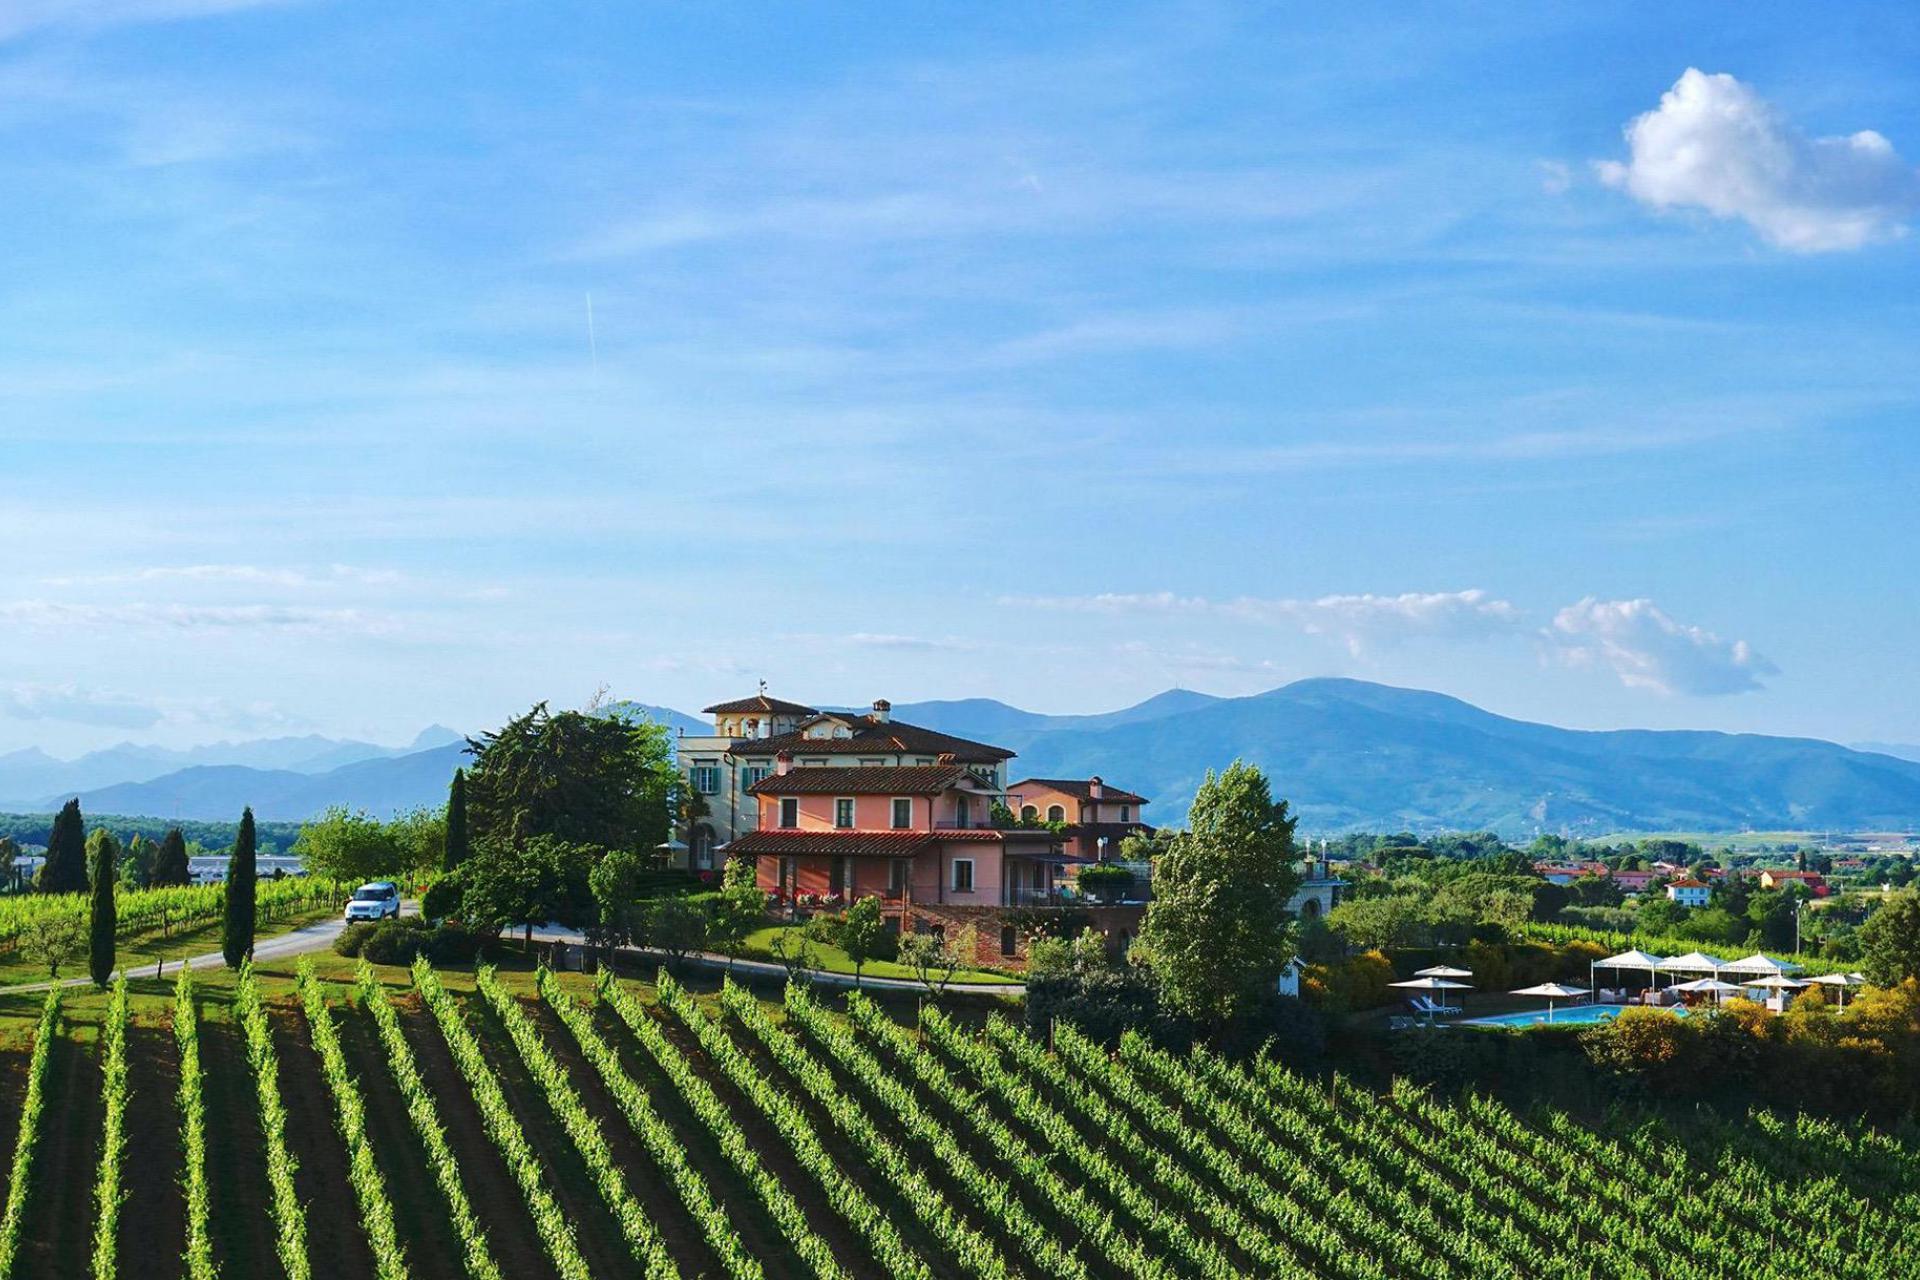 Prestigious winery near Pisa